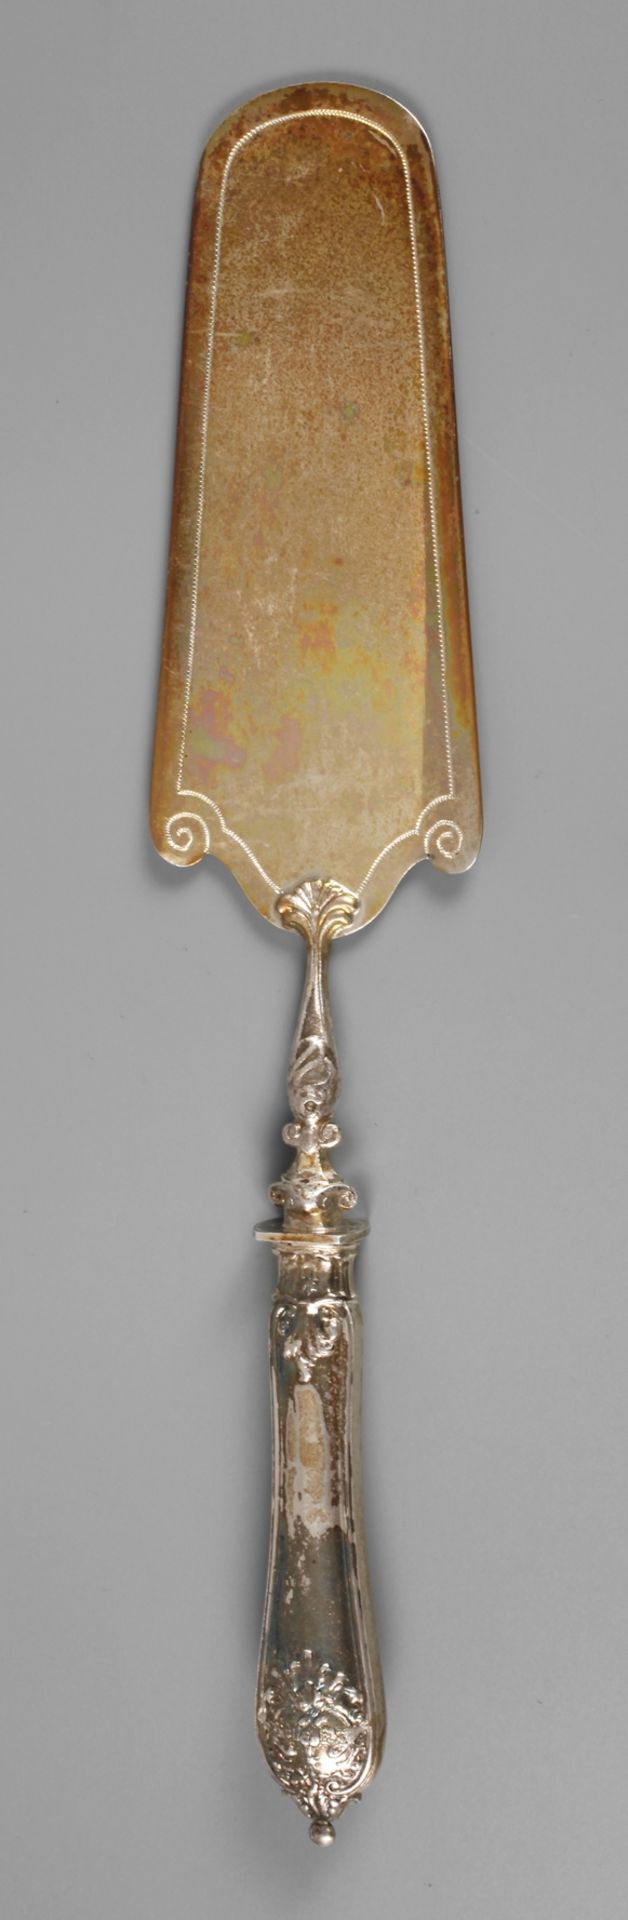 Silber Tortenheber aus dem Besitz Kaiser Wilhelm II. von Preußendatiert 1900, Silberstempel